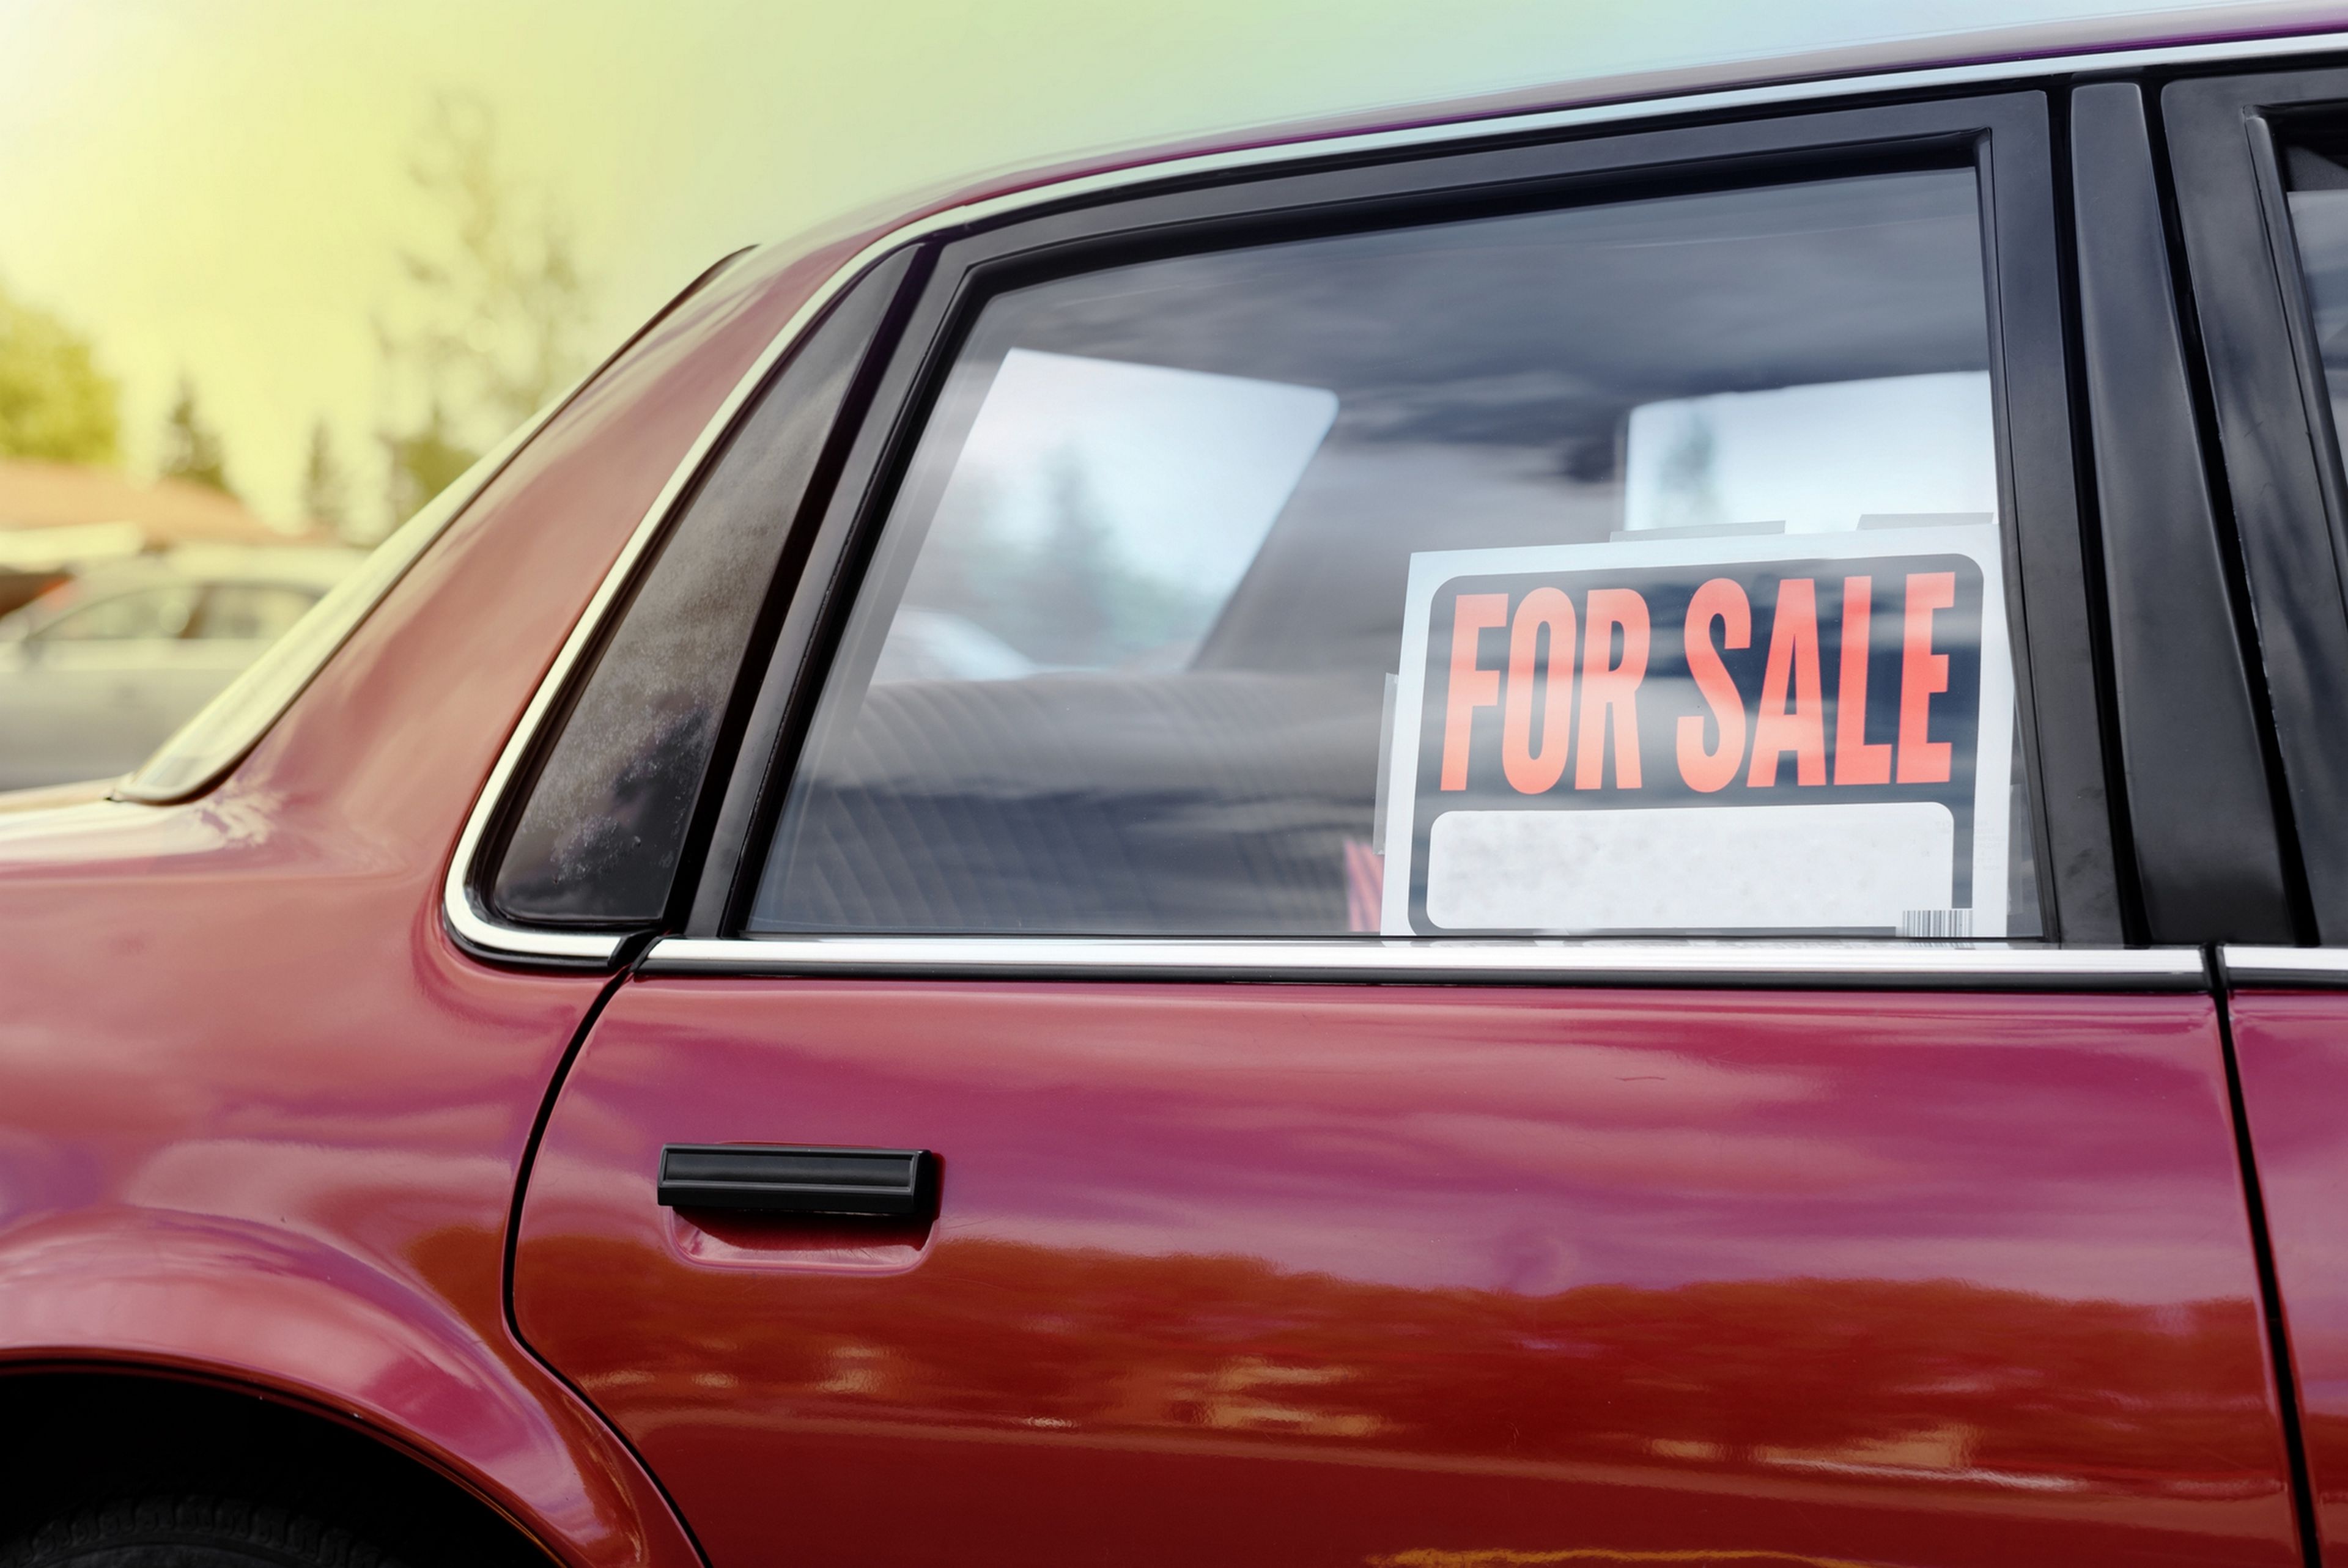 Cuidado con poner un cartel de 'Se vende' en tu coche, incluso aunque esté aparcado